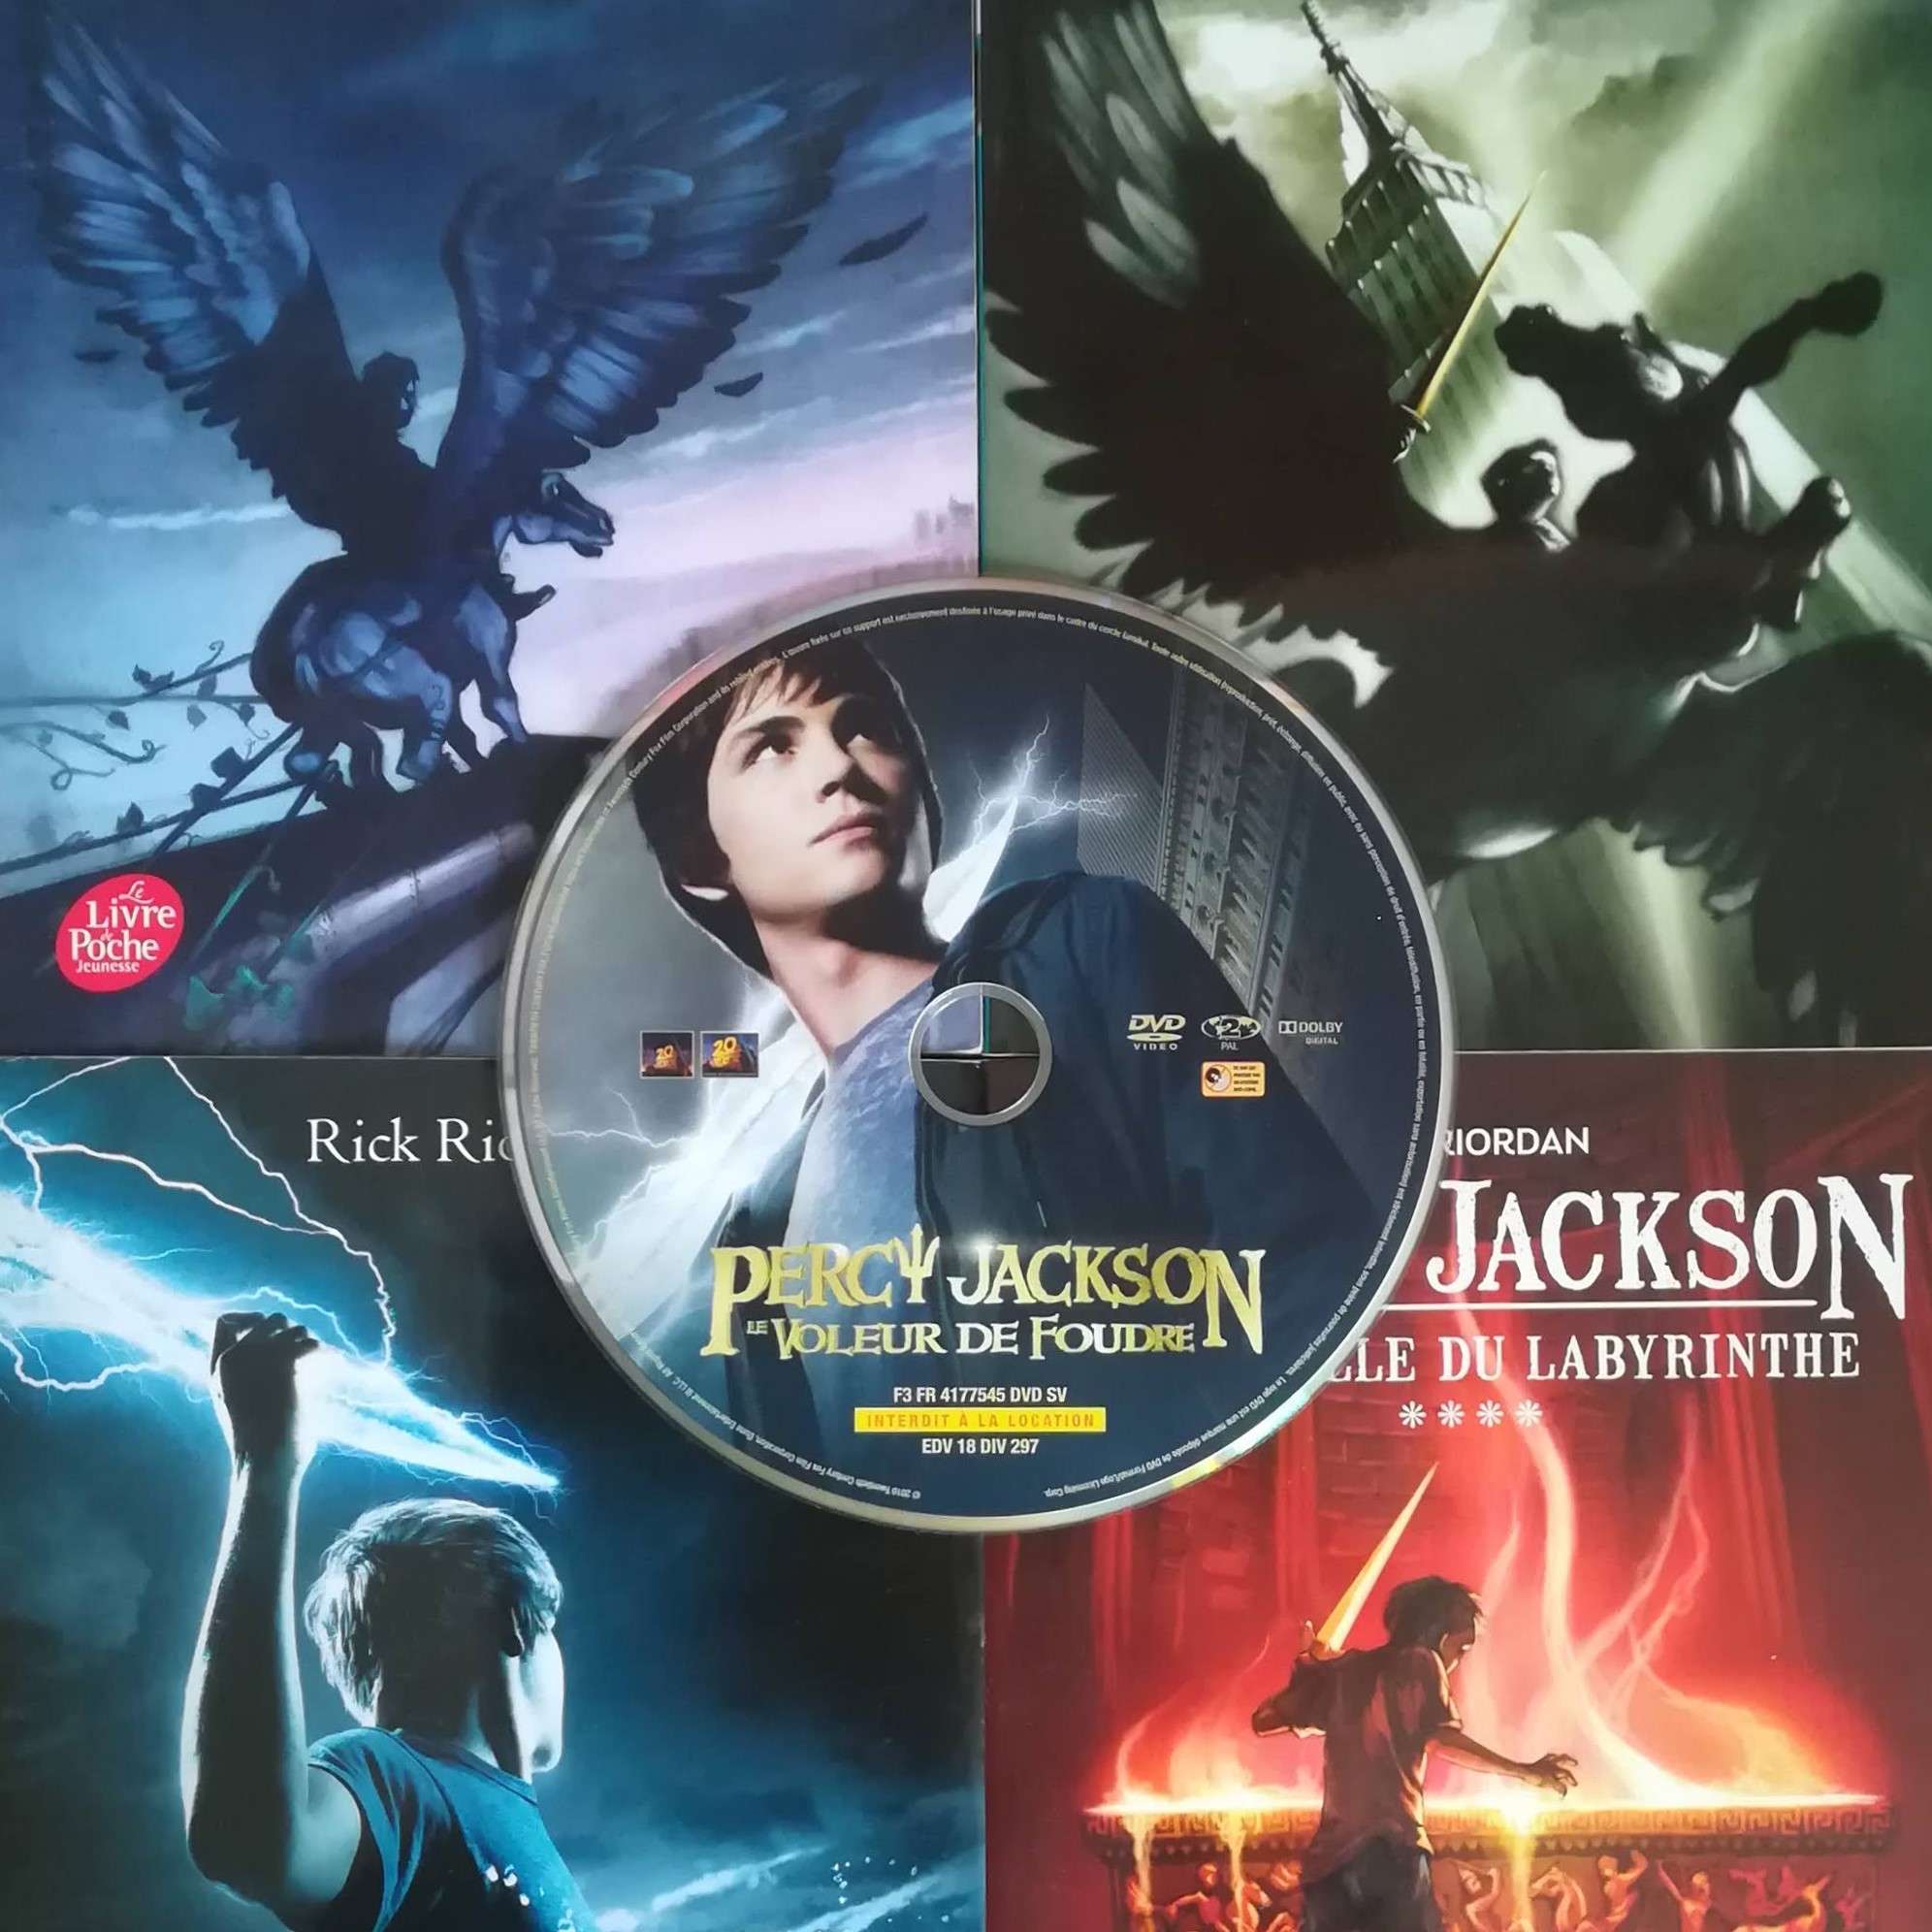 Le DVD du film Percy Jackson est posé sur les romans écrits par Rick Riordan.